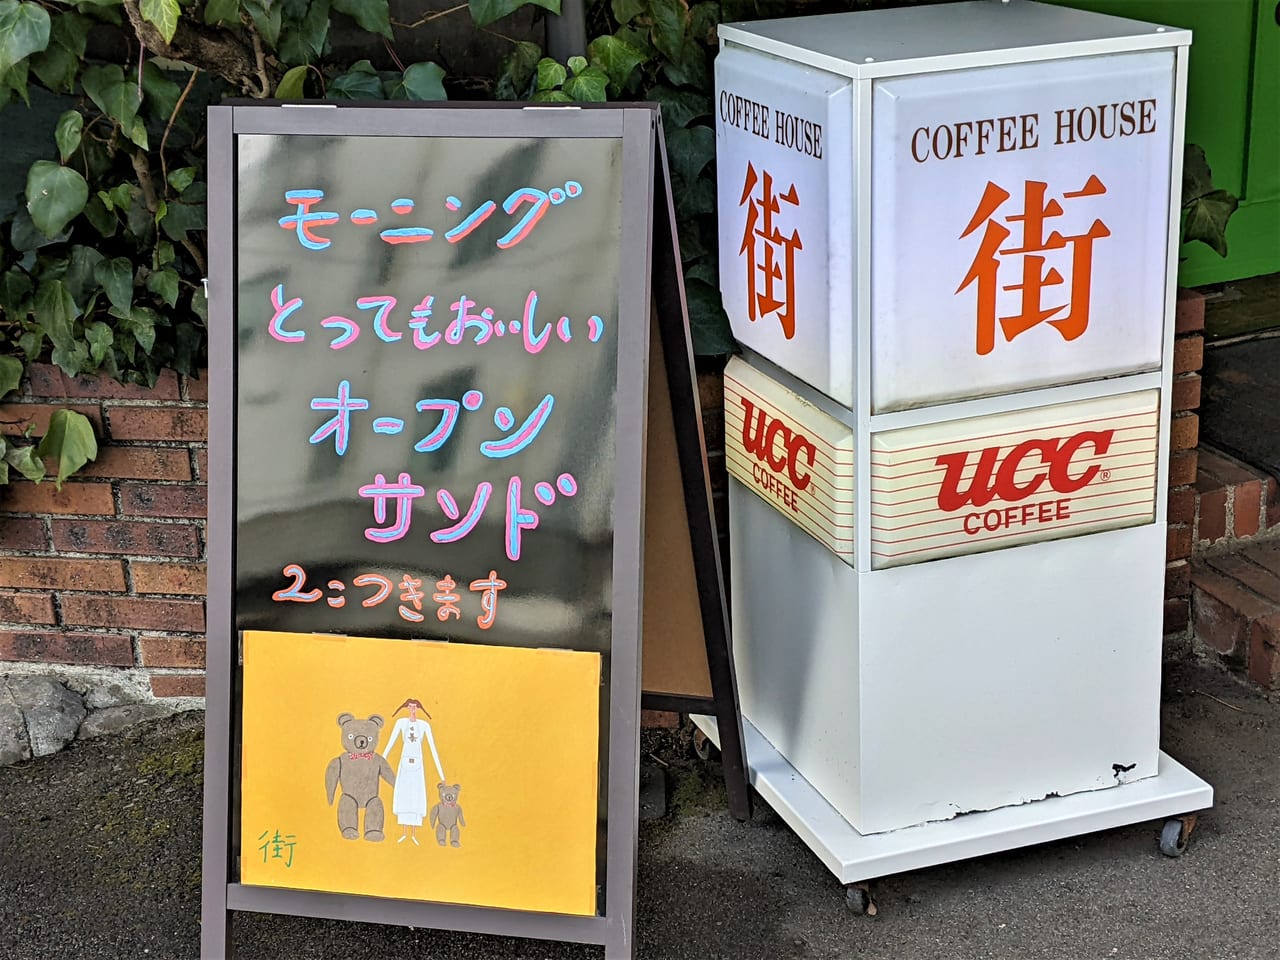 「COFFEE HOUSE 街」の看板